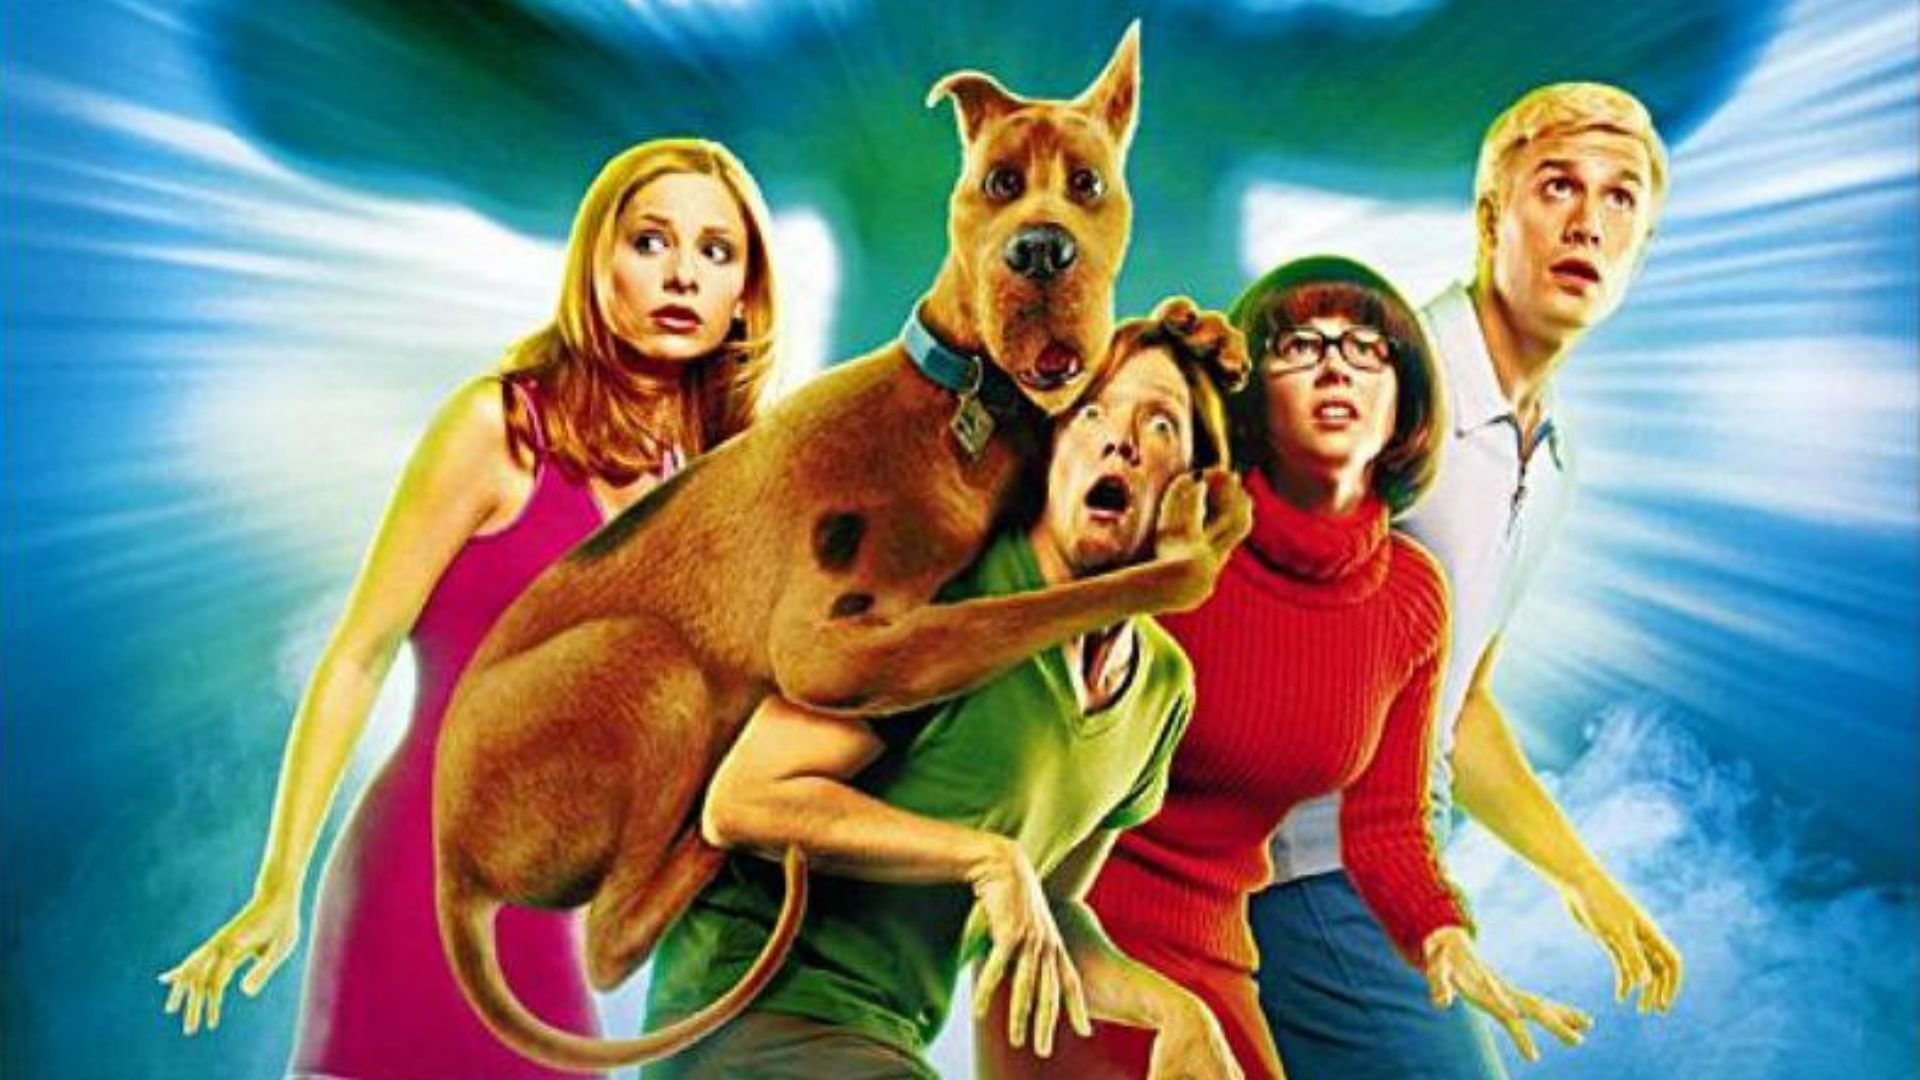 La dernière apparition du grand dogue allemand au cinéma date de 2002, avec au casting Sarah Michelle Gellar et Freddy Prinze Jr